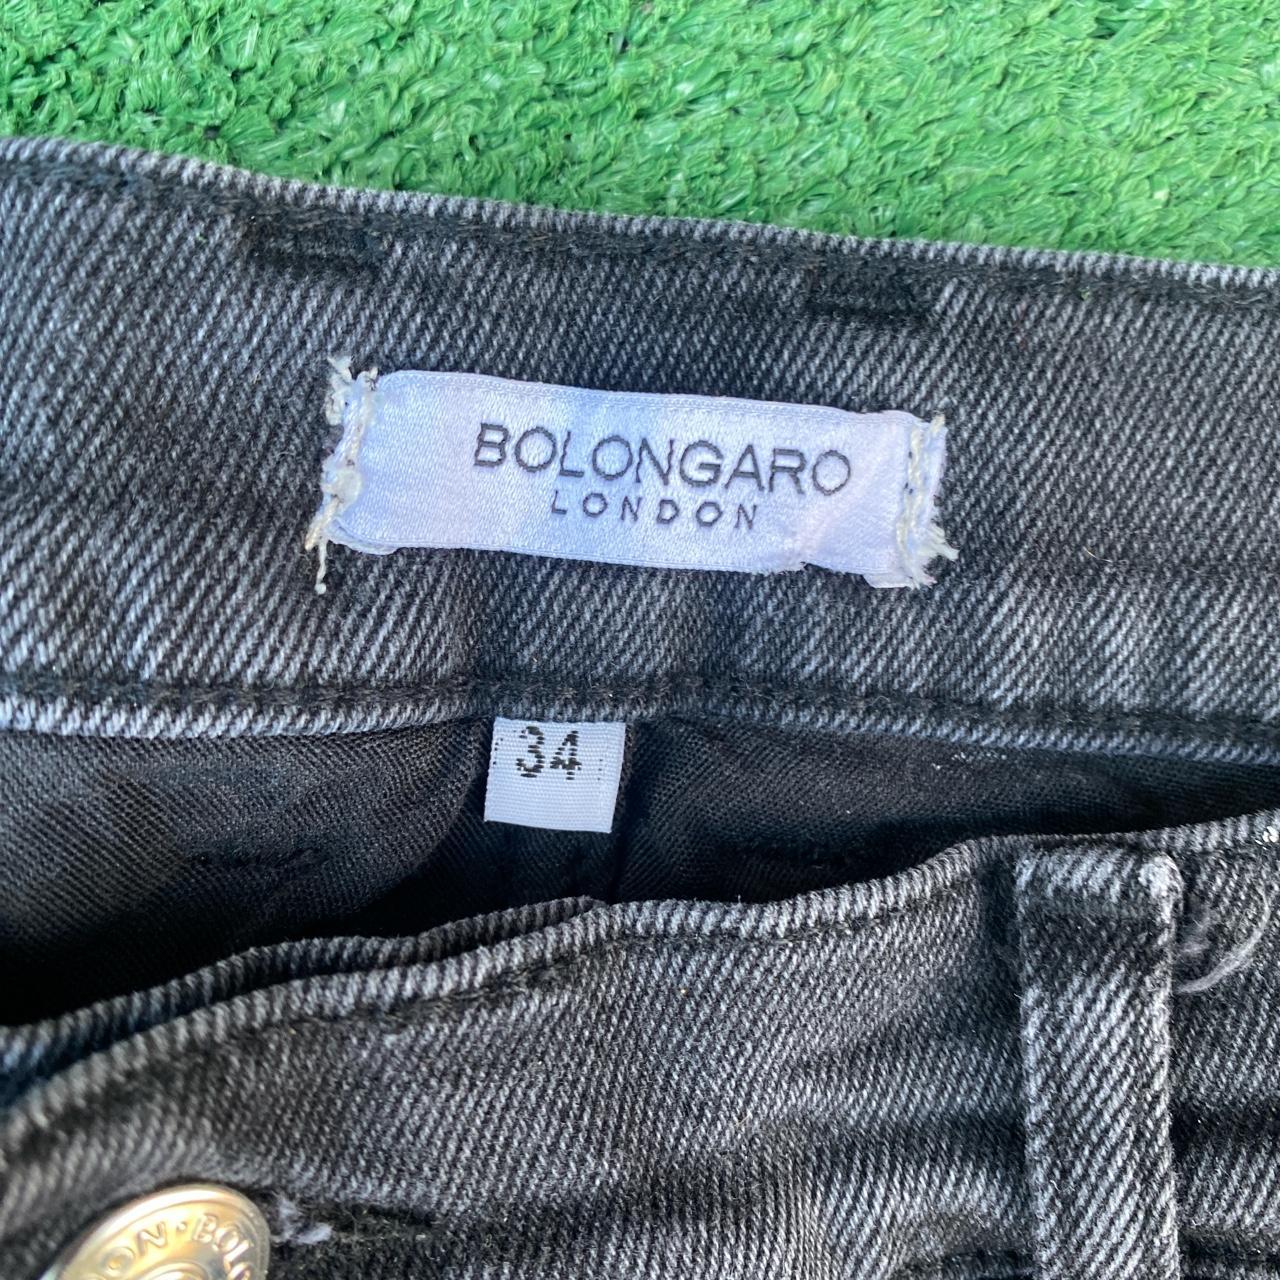 Product Image 2 - Black Bolongaro Jean Shorts/ Size